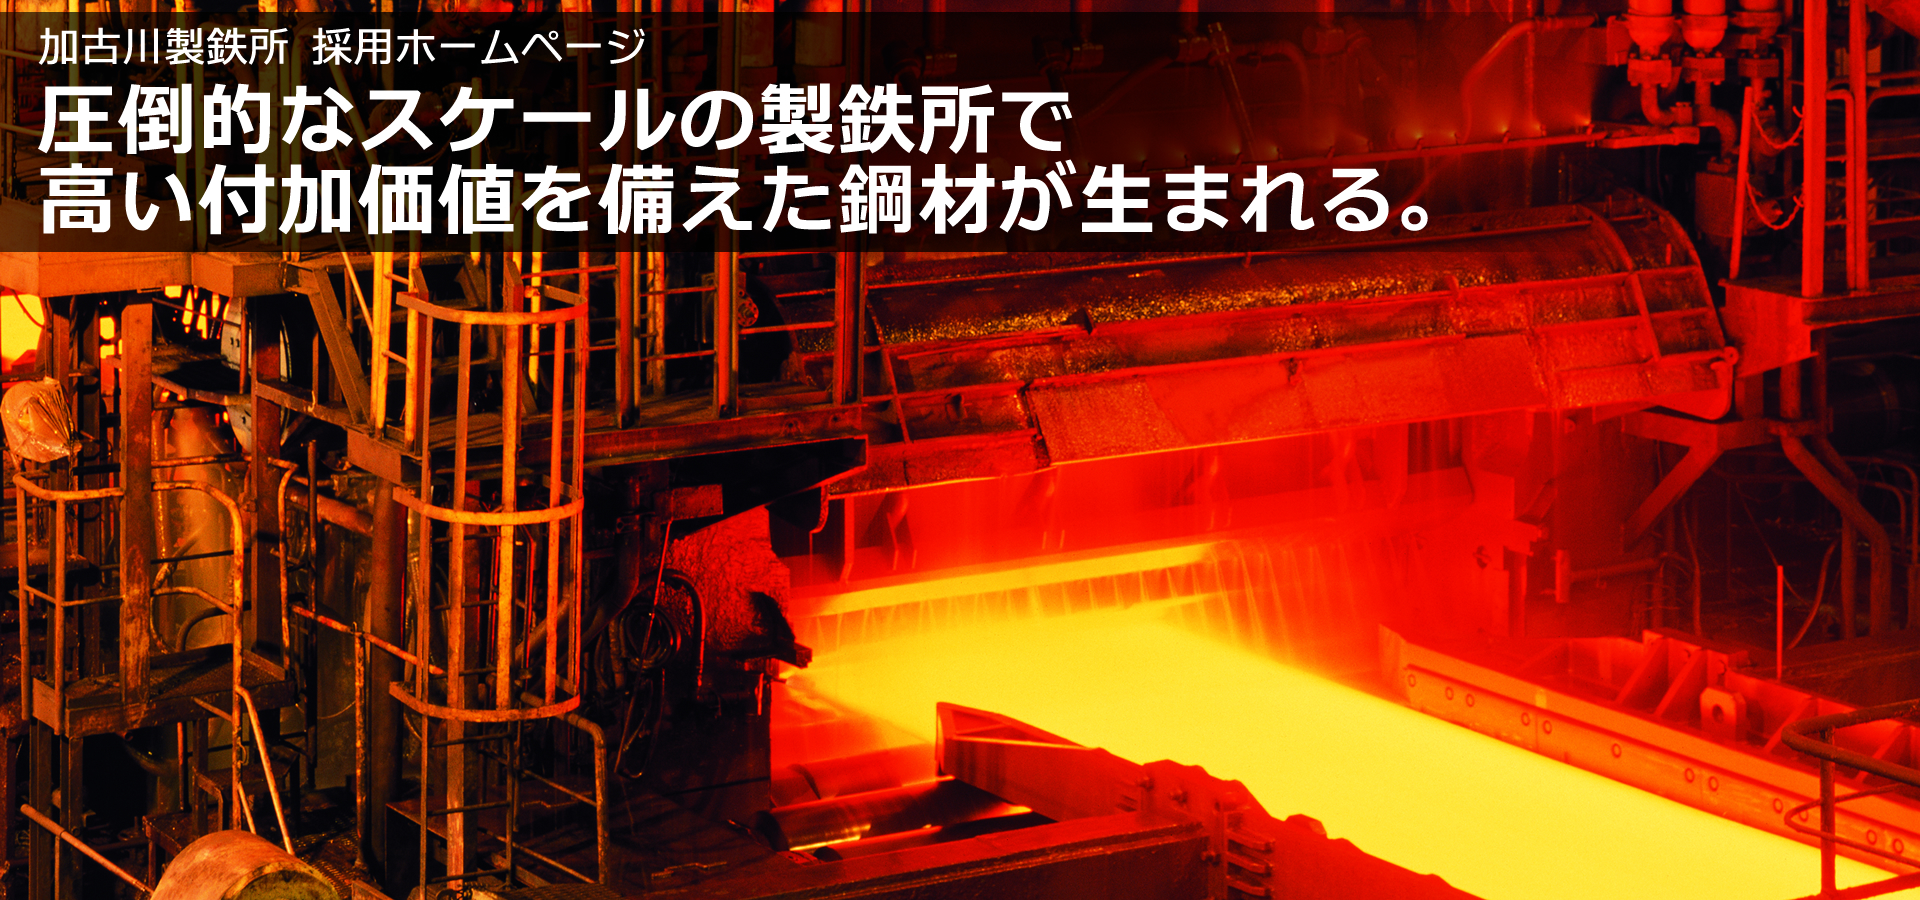 圧倒的なスケールの製鉄所で高い付加価値を備えた鋼材が生まれる。